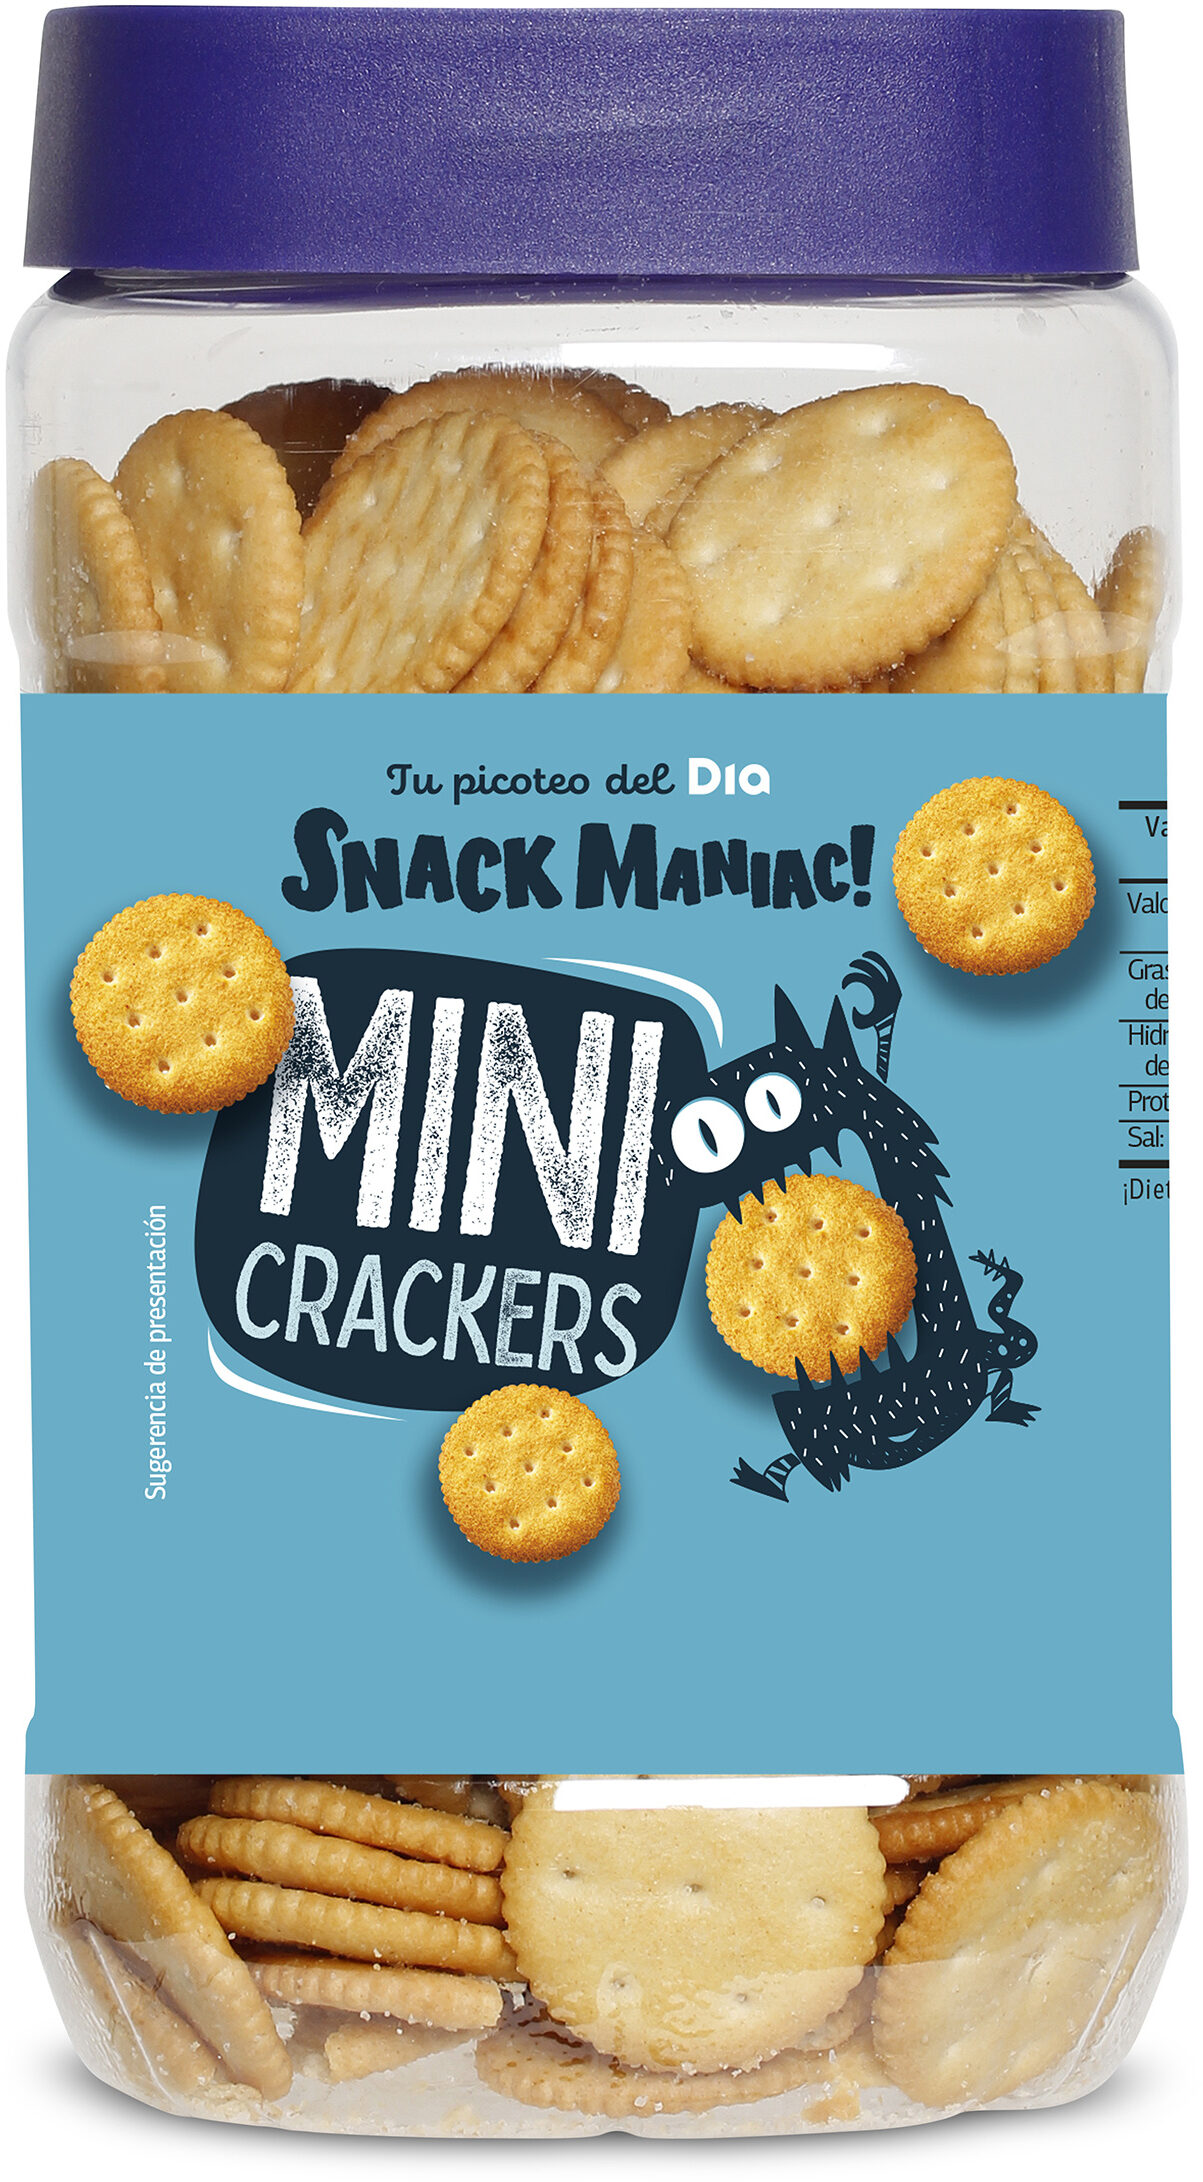 Mini galletas saladas crackers - Product - es